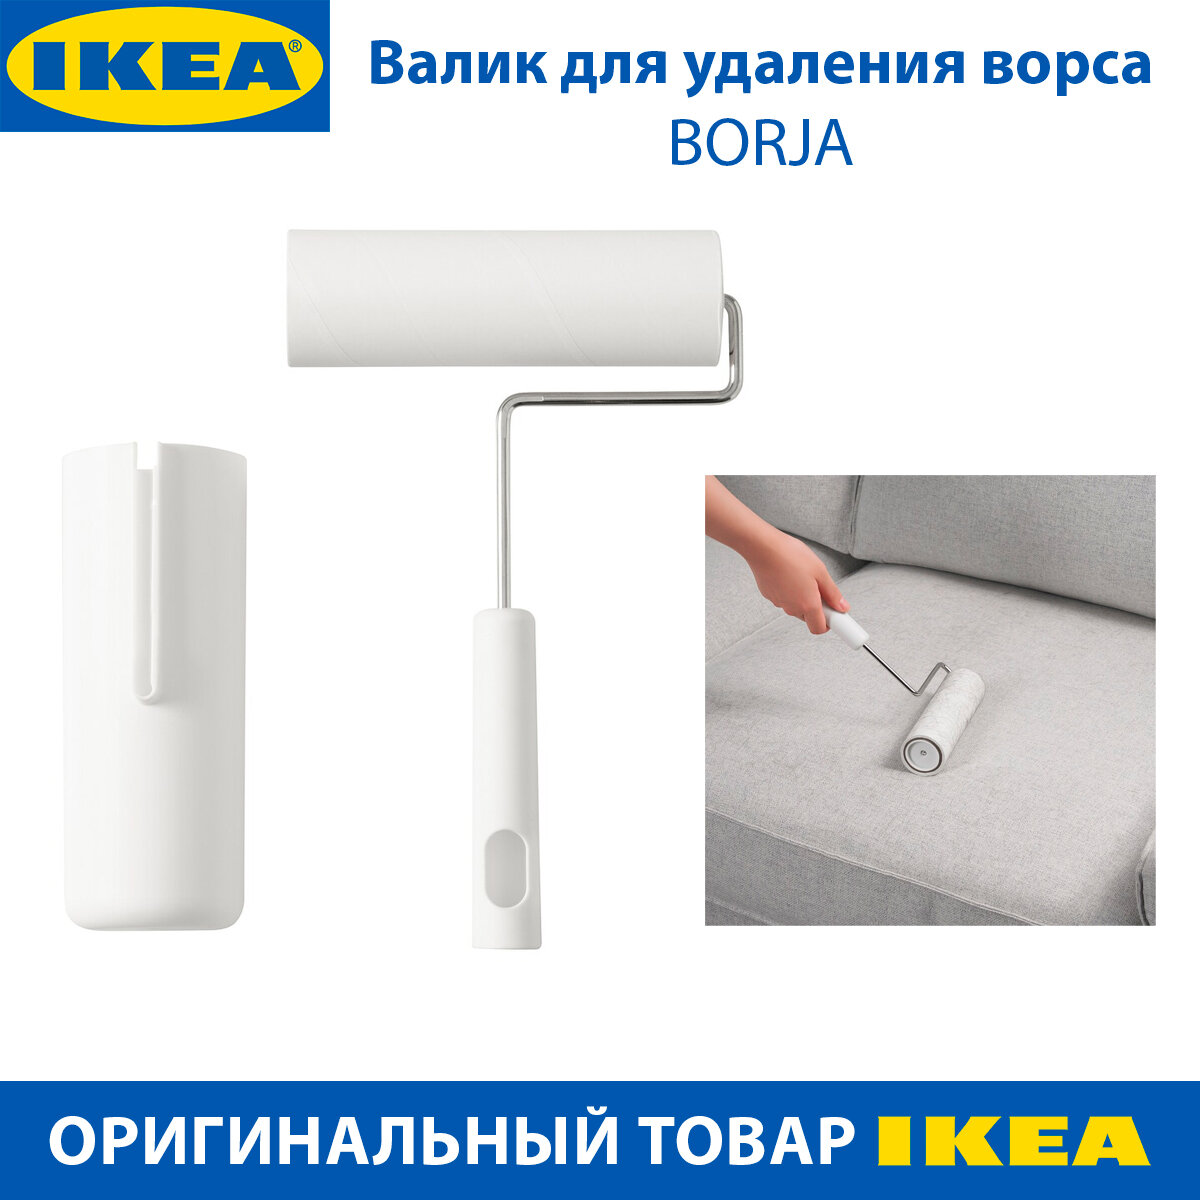 Валик для удаления ворса IKEA PEPPRIG (пепприг) хлопковый, ширина 17 см, 1 шт